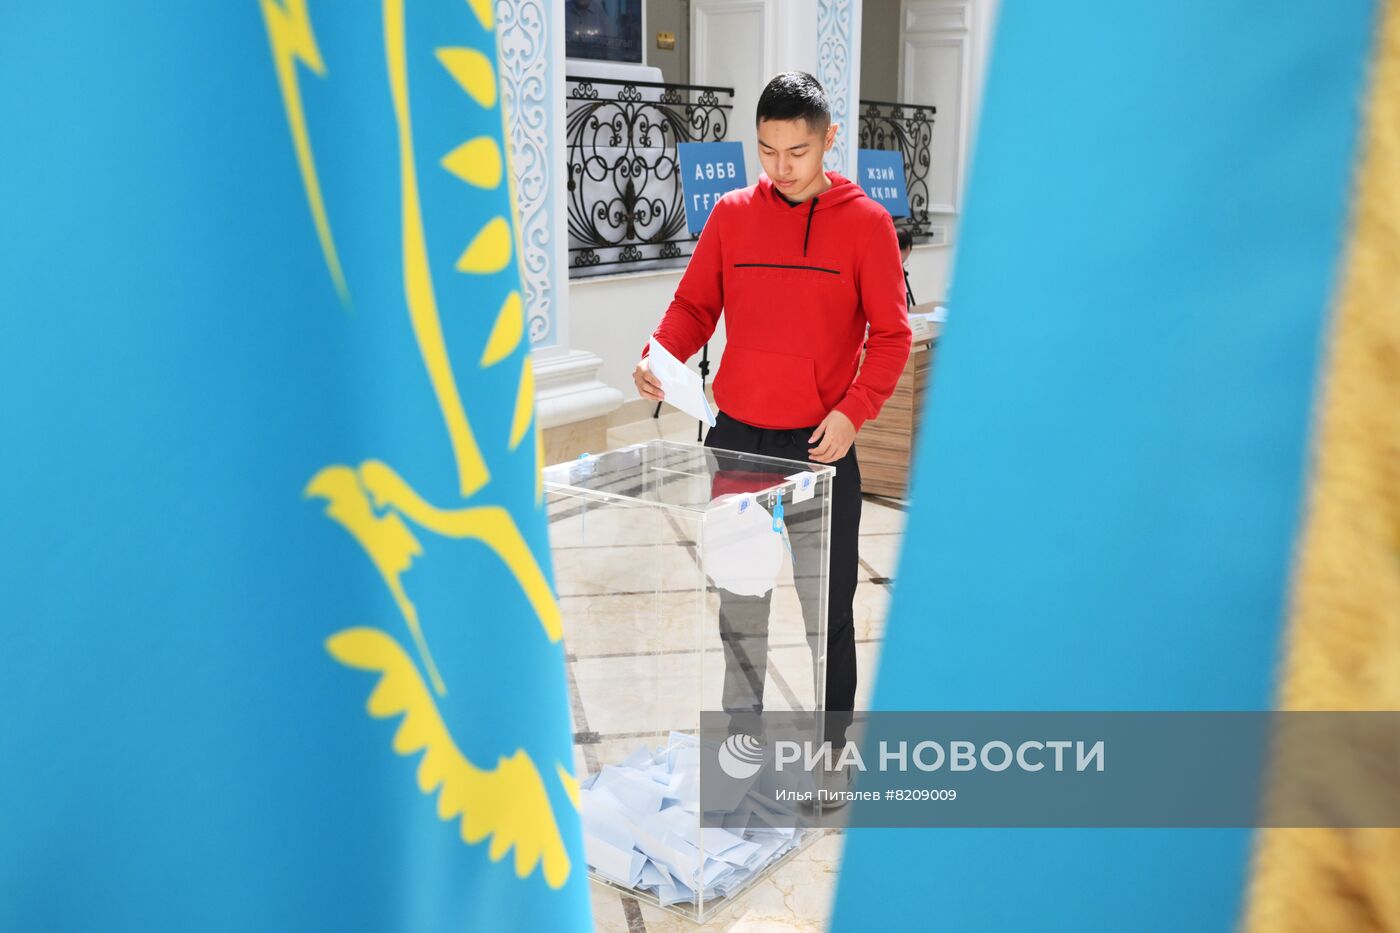 Референдум по поправкам в конституцию Казахстана